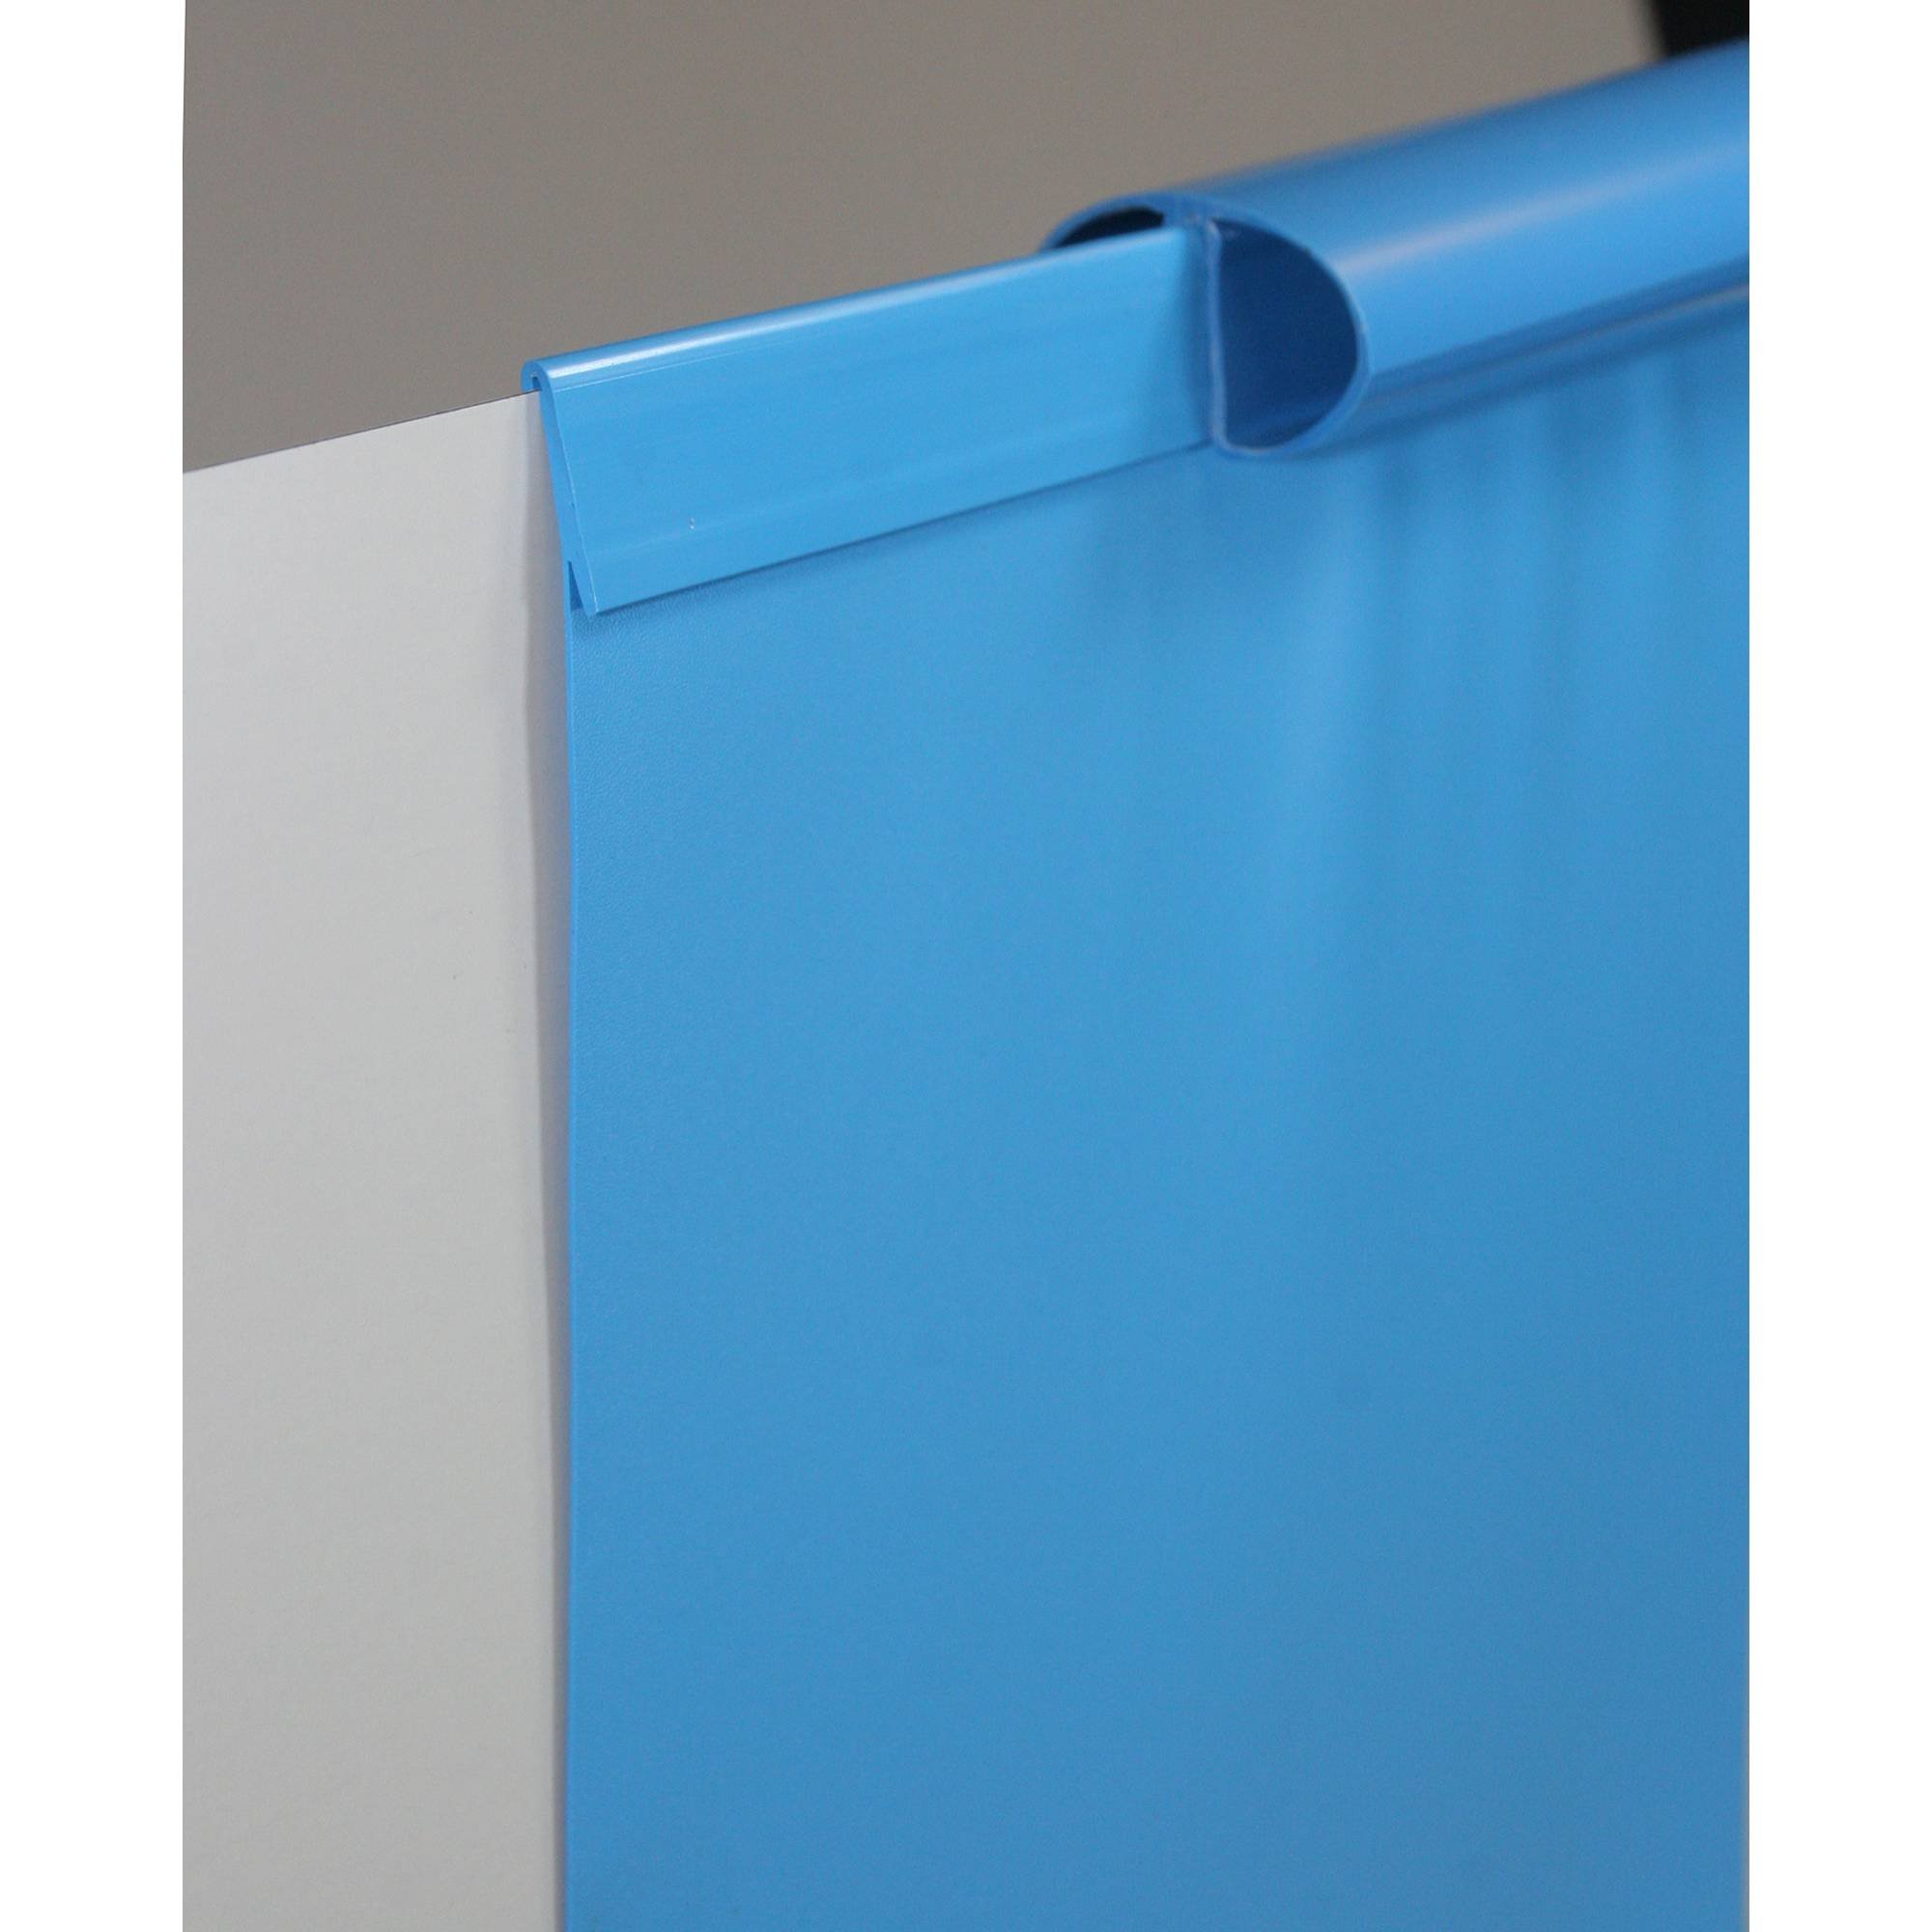 Poolfolie Ersatzfolie Ovalbecken 623x360x120cm - Dicke 0,6mm - Einhängebiese - blau